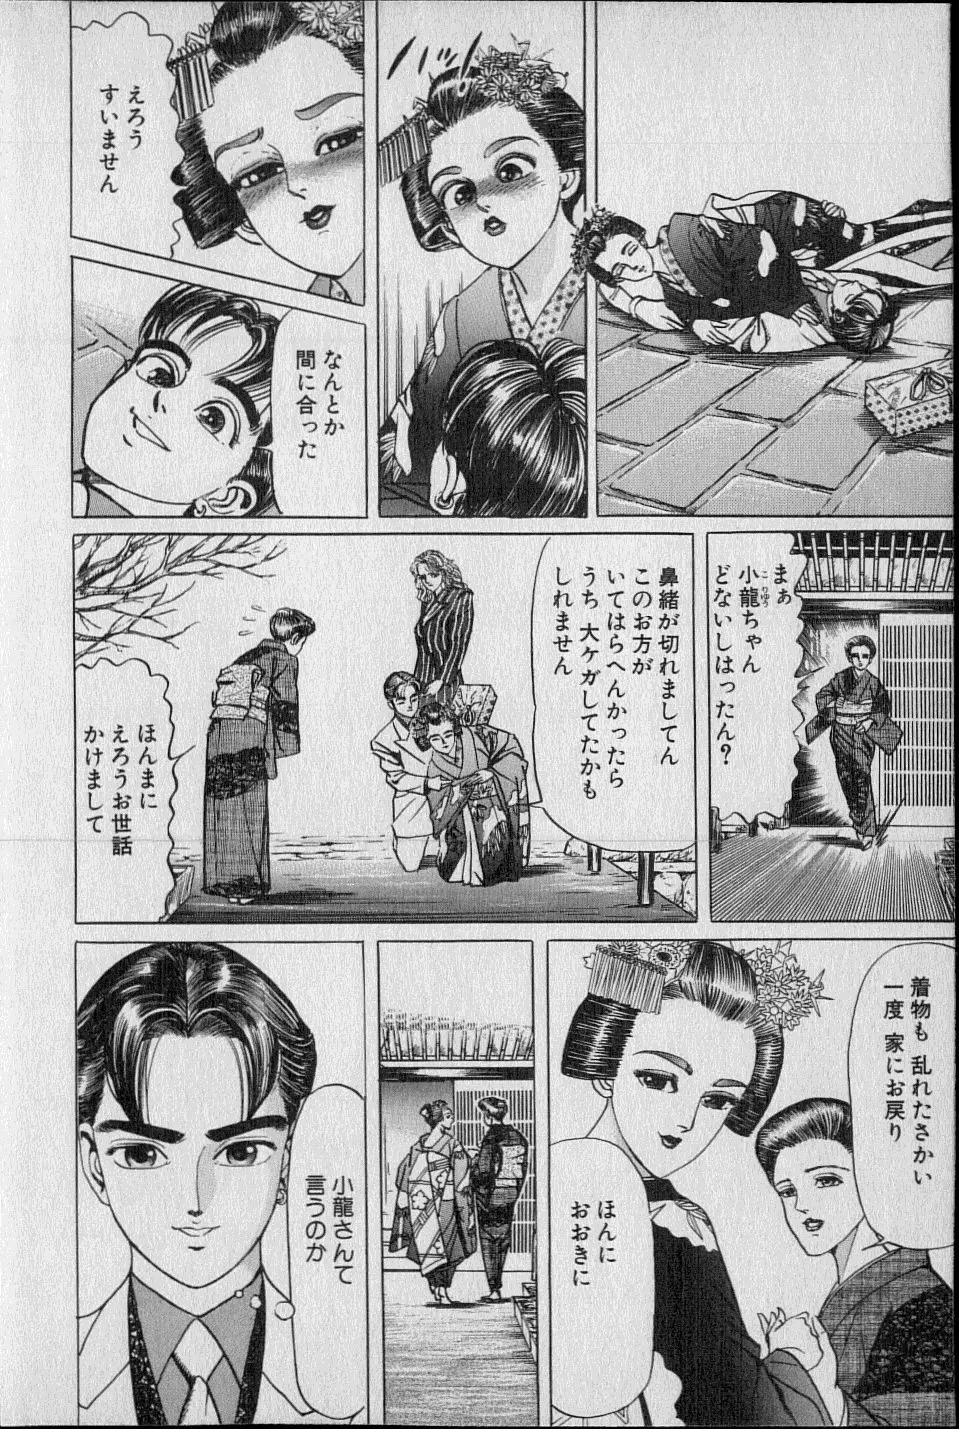 Kouryuu no Mimi Volume 02 27ページ